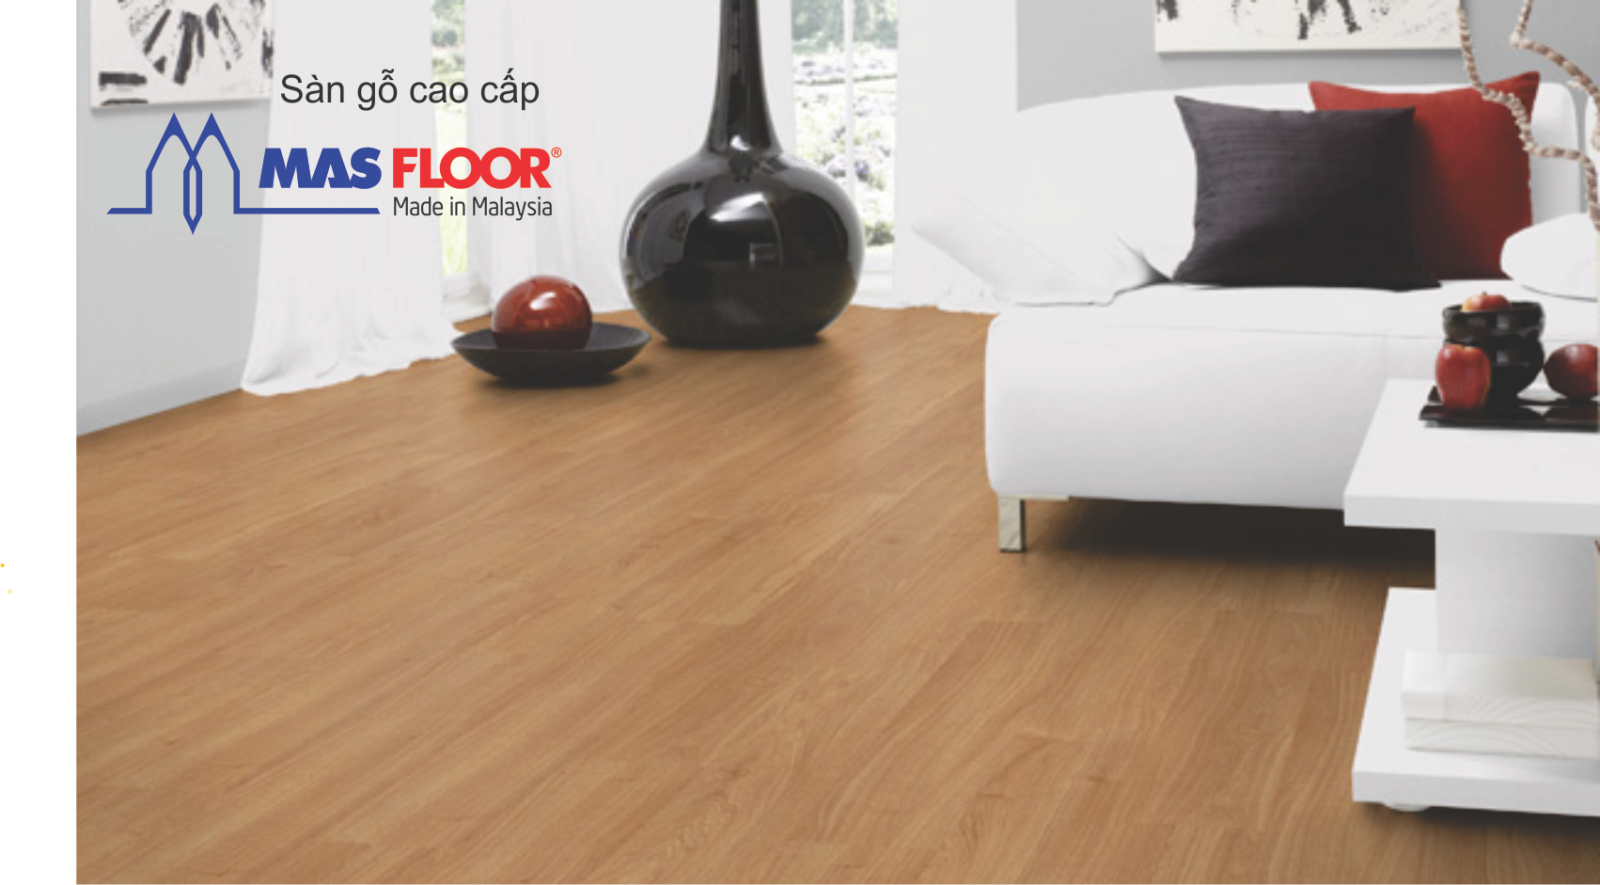 Sàn gỗ Masfloor được các chuyên gia khuyên dùng trong thiết kế nội thất giúp mùa đông ấm áp hơn